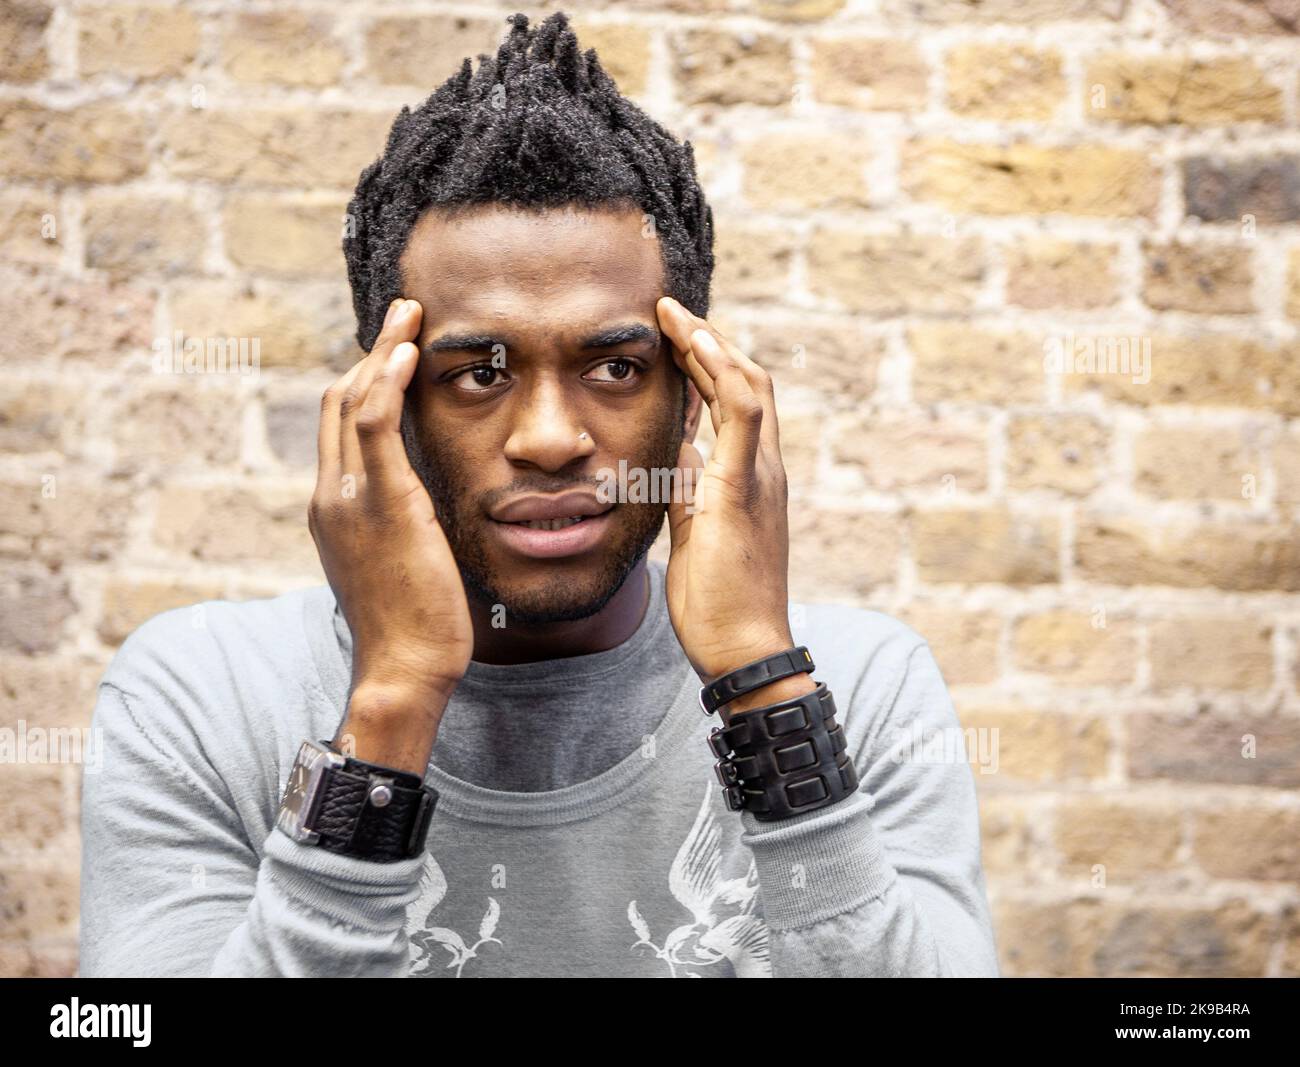 Emozioni ed espressioni: Panico. Una preoccupata espressione di realizzazione sul volto di un giovane. Da una serie di immagini correlate. Foto Stock